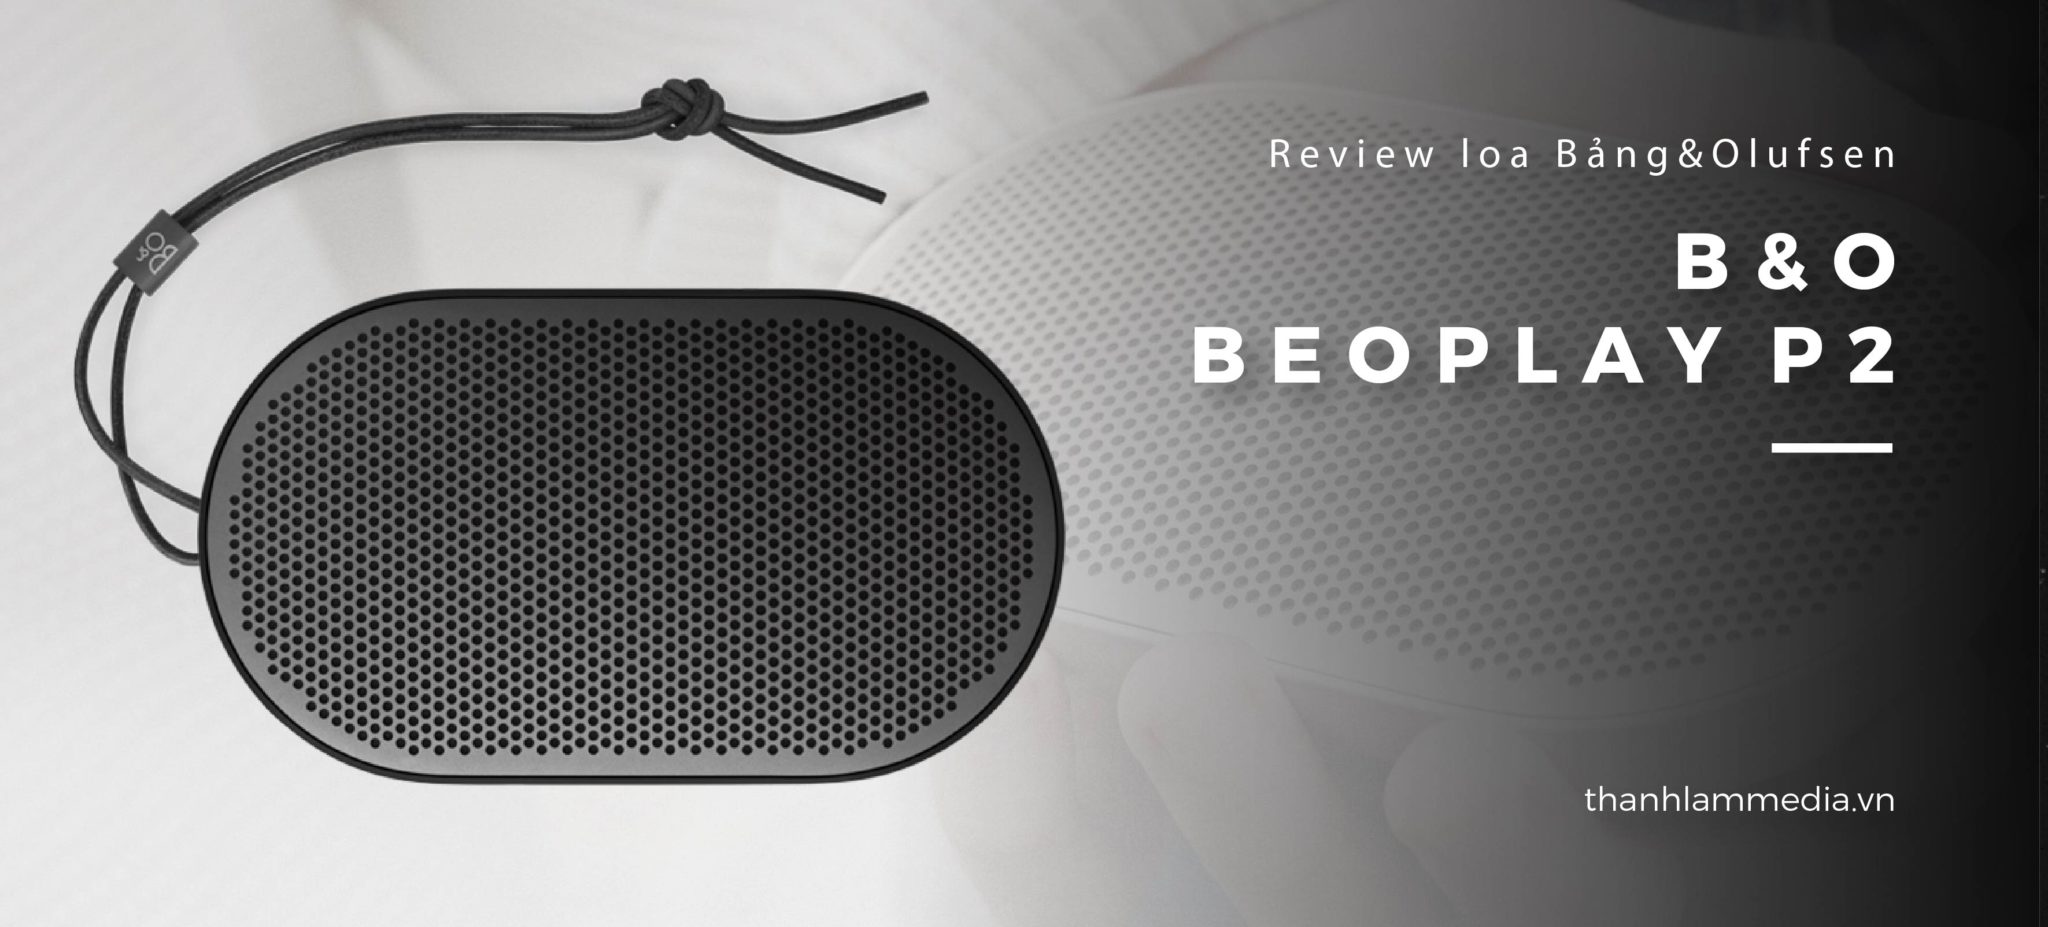 Loa B&O Beoplay P2: Thiết kế nhỏ gọn, âm thanh ấn tượng 24